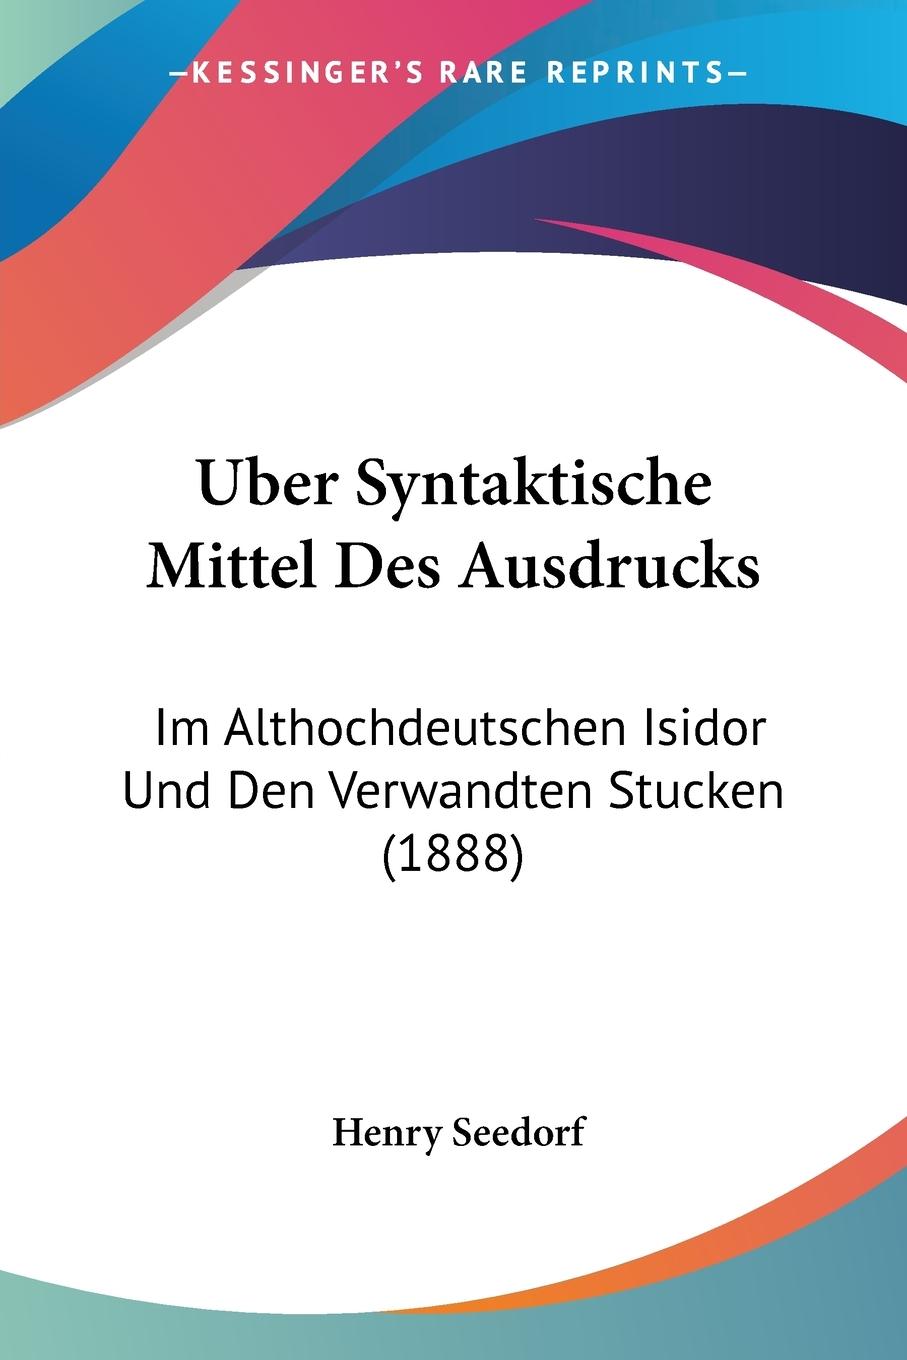 Uber Syntaktische Mittel Des Ausdrucks - Seedorf, Henry